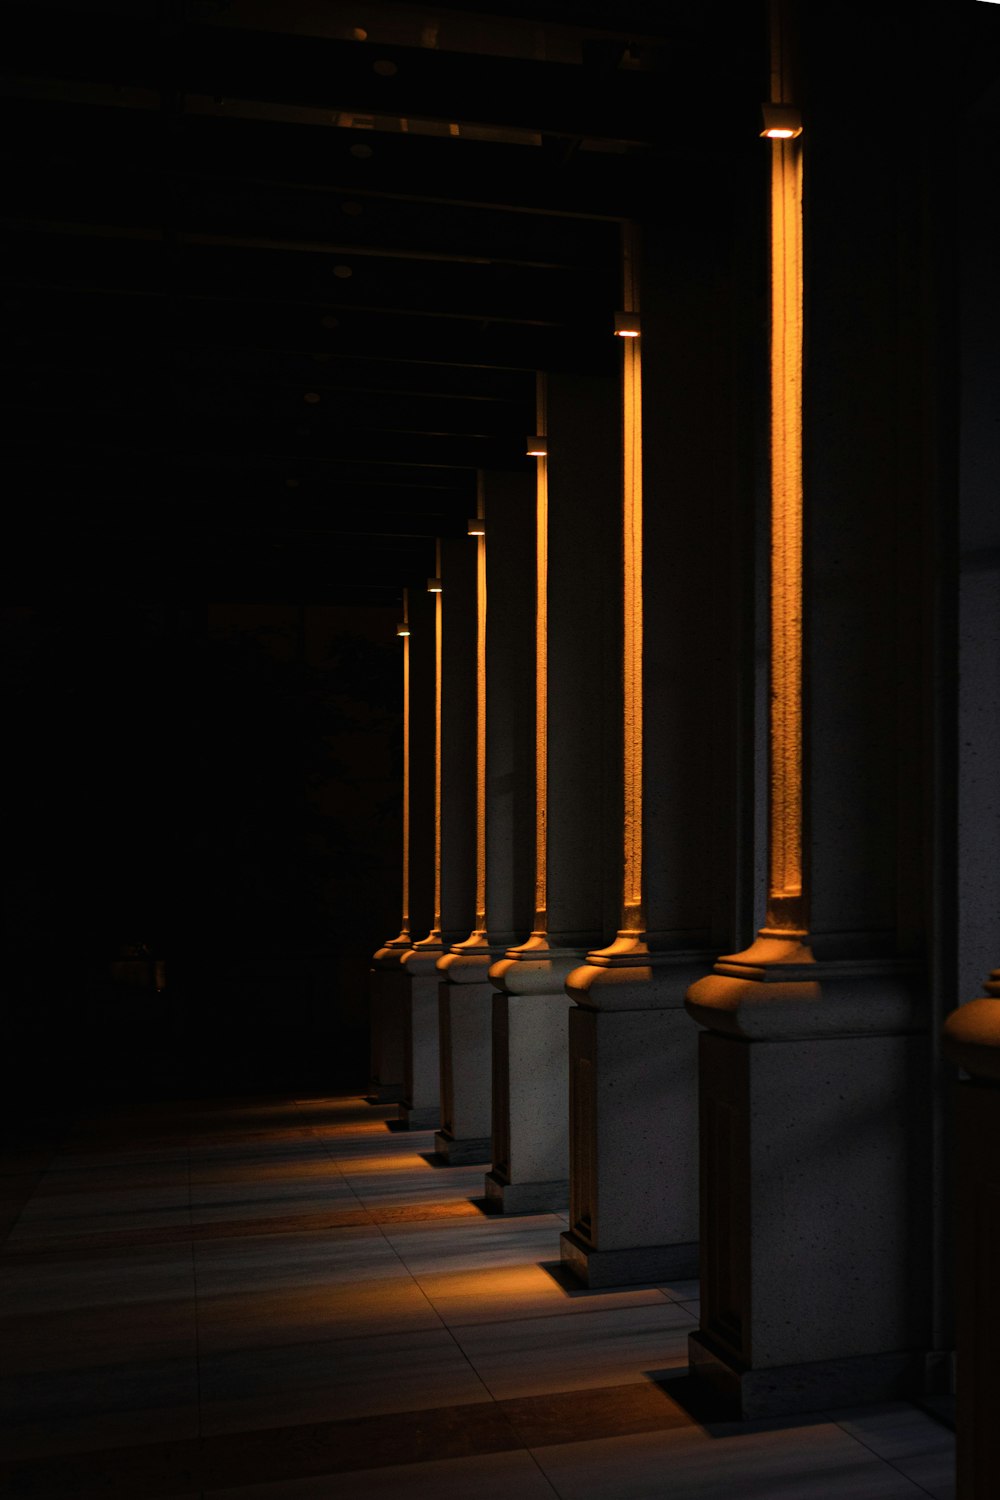 a row of pillars lit by a street lamp